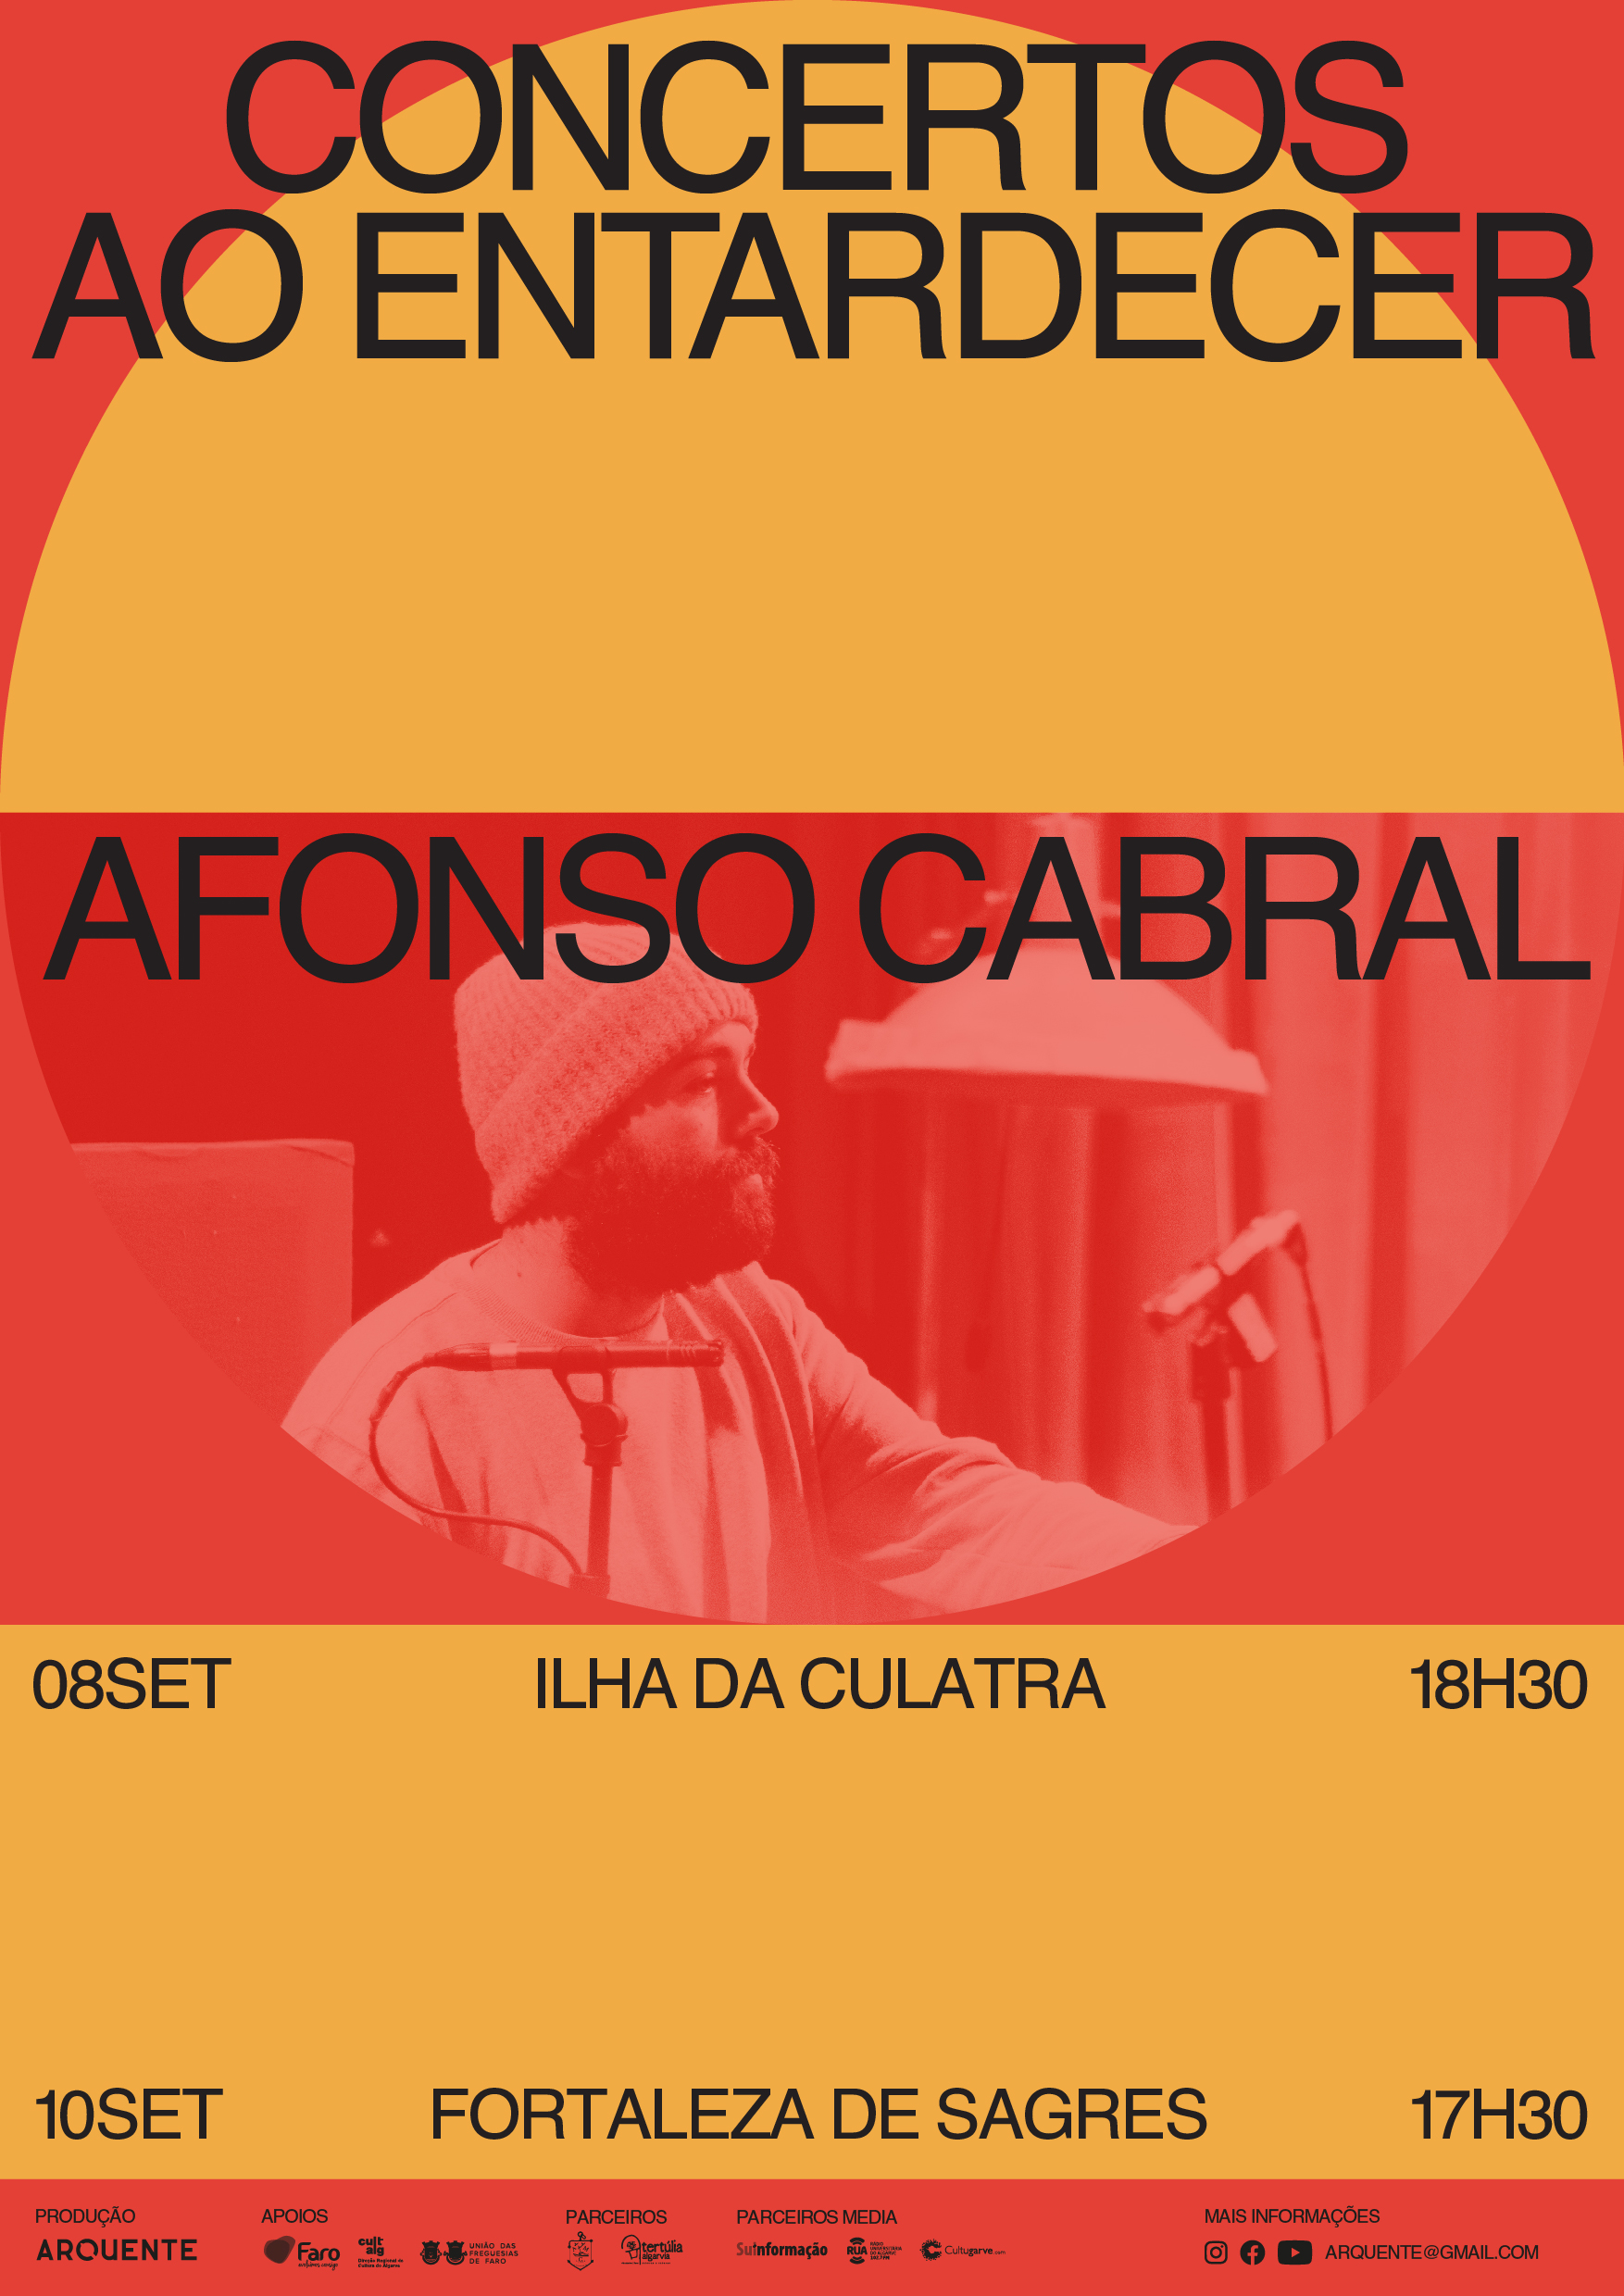 “Concertos ao Entardecer” regressam à Fortaleza de Sagres com Afonso Cabral, Ana Lua Caiano e Chica